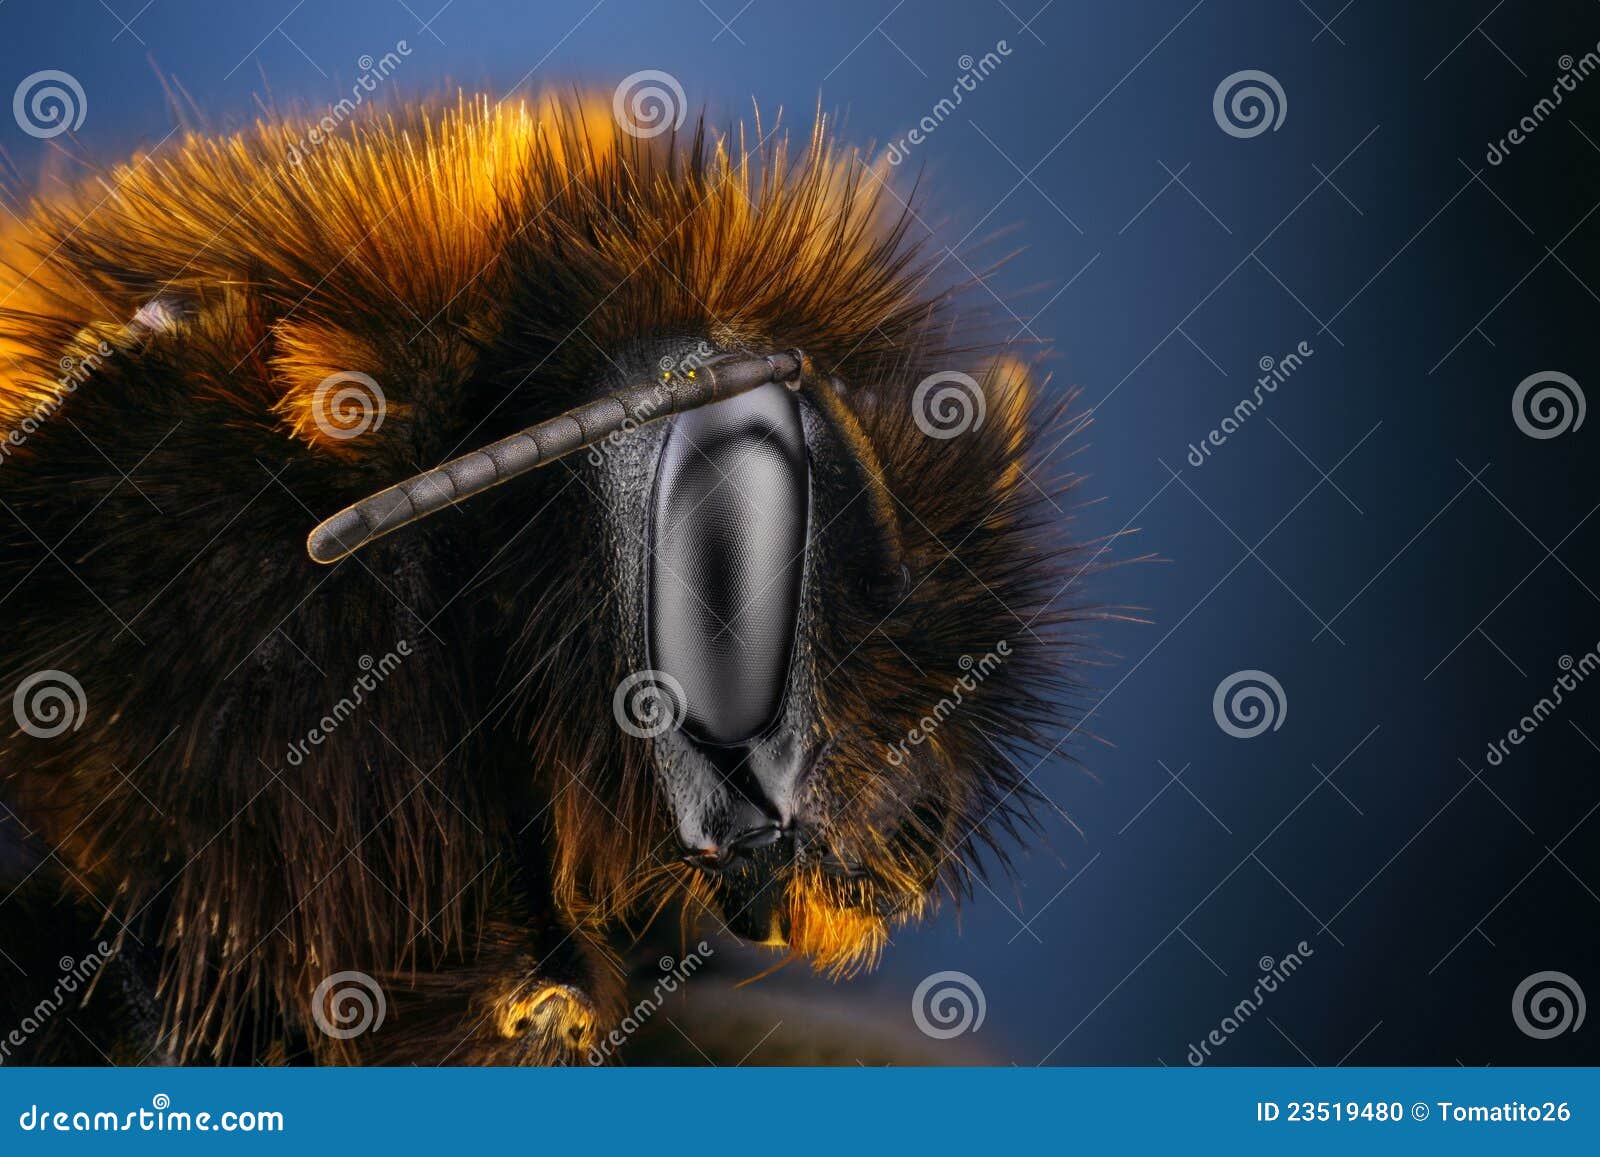 Pszczoła mamrocze szczegółową krańcową ostrą naukę. Pszczoła mamrocze szczegółowego ekstremum wiele mikroskopu celu jeden fotografii ostrzy strzały brogująca nauka brać